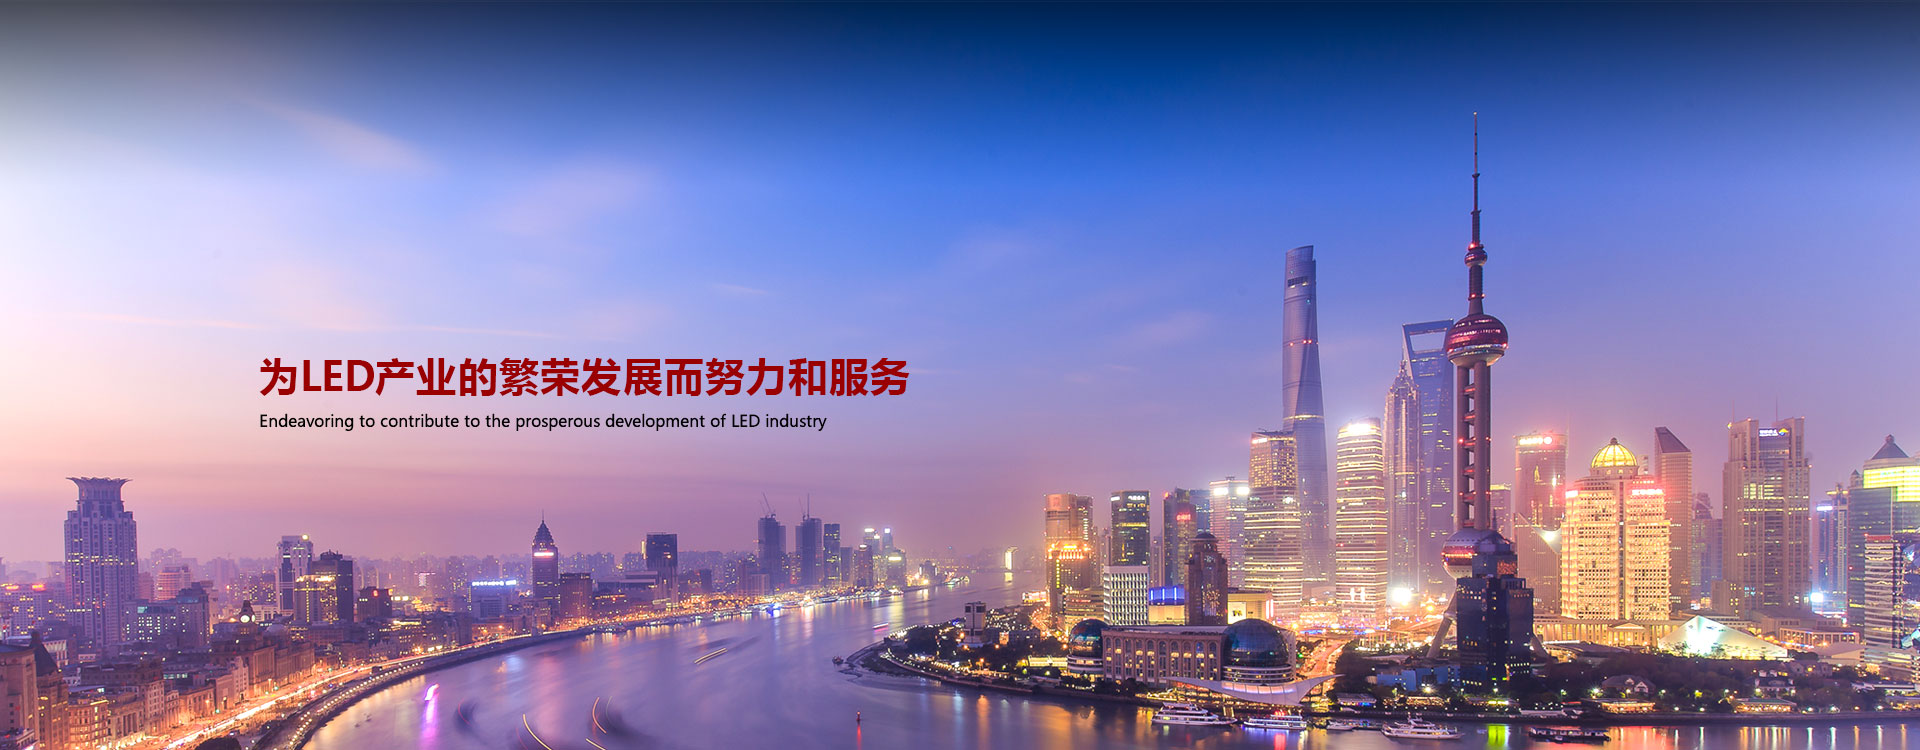 pg电子模拟器(中国)官方网站